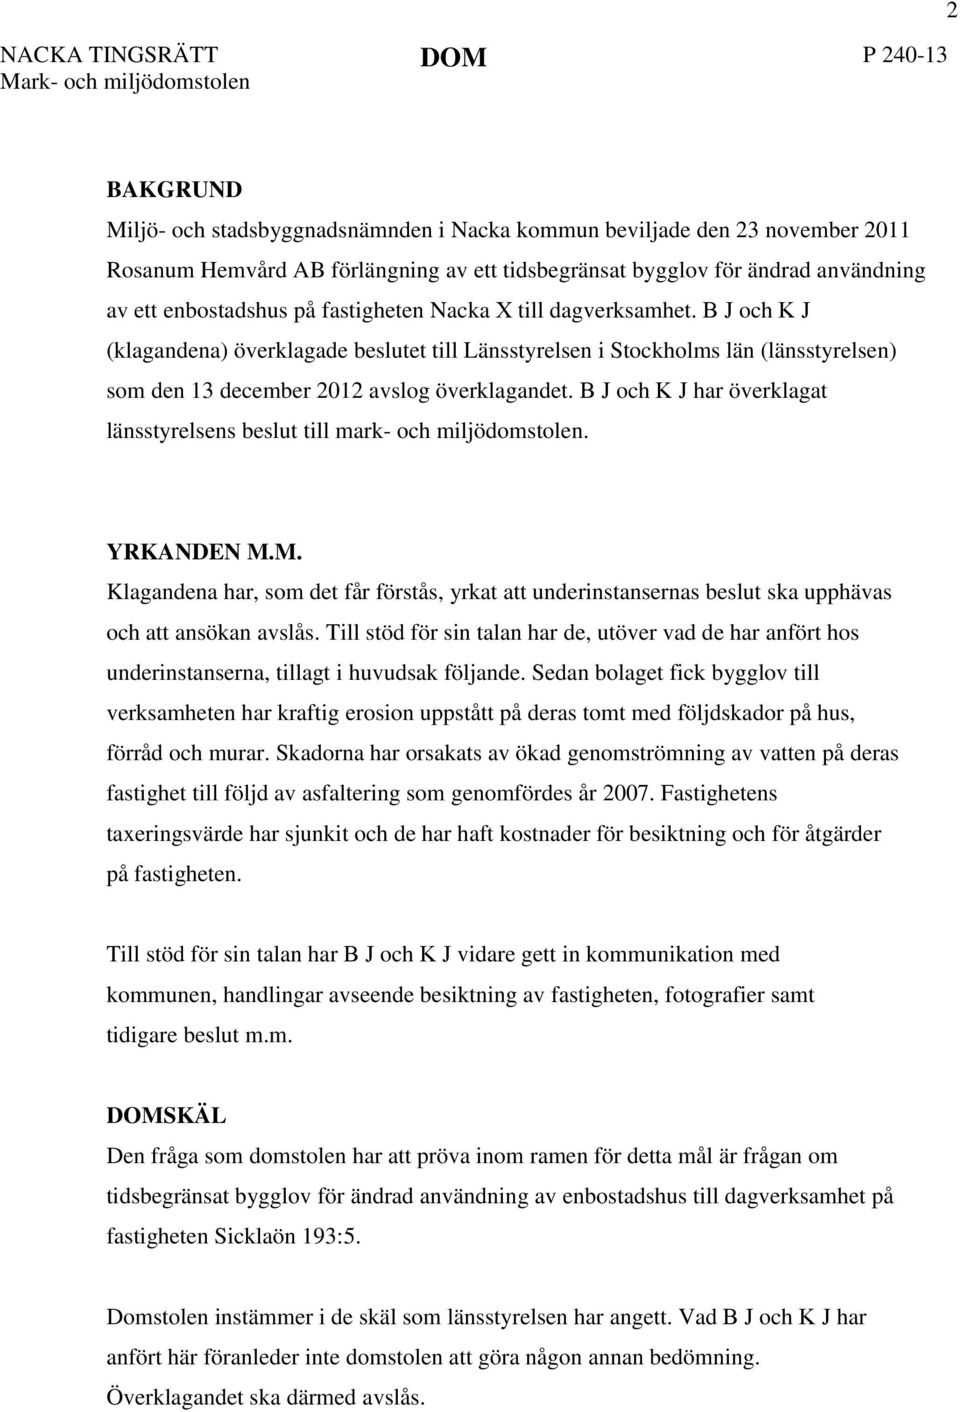 B J och K J (klagandena) överklagade beslutet till Länsstyrelsen i Stockholms län (länsstyrelsen) som den 13 december 2012 avslog överklagandet.